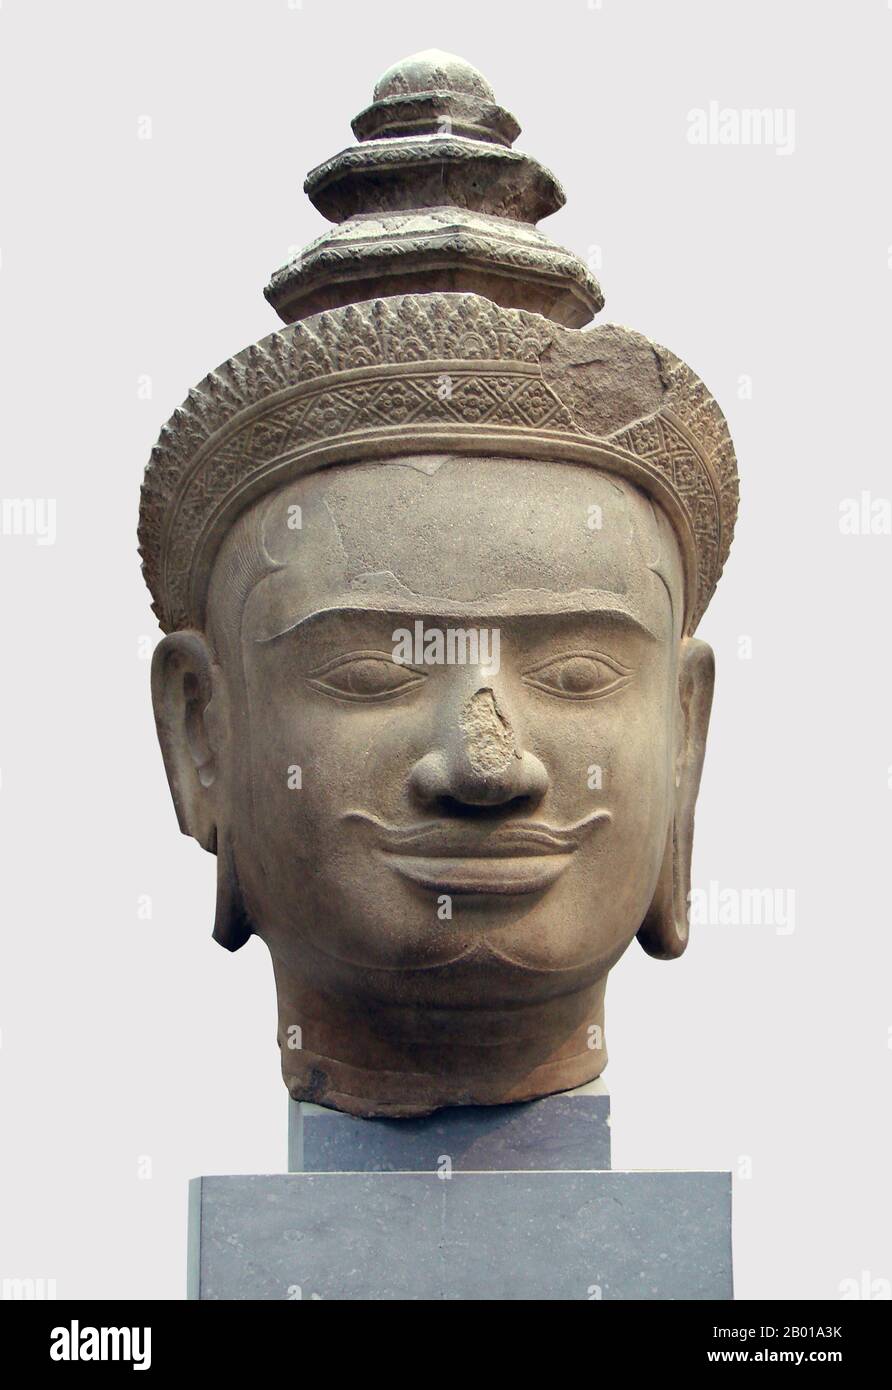 Cambodge: Chef de Vishnu de Phnom Bok, Siem Reap, maintenant au Musée Guimet, Paris, 9th-10th siècle. Phnom Bok est une colline dans le nord-est de la Baray est au Cambodge, avec un prasat (temple) du même nom construit sur elle. C'est l'une des 'trilogie de montagne', dont chacune a un temple avec un agencement similaire. La création du temple est créditée du règne de Yasovarman I (889–910) entre les 9th et 10th siècles et a été établie après qu'il a déplacé sa capitale à Angkor et l'a nommée Yasodharapura. Les deux autres temples sœurs sont Phnom Bakheng et Phnom Krom. Banque D'Images